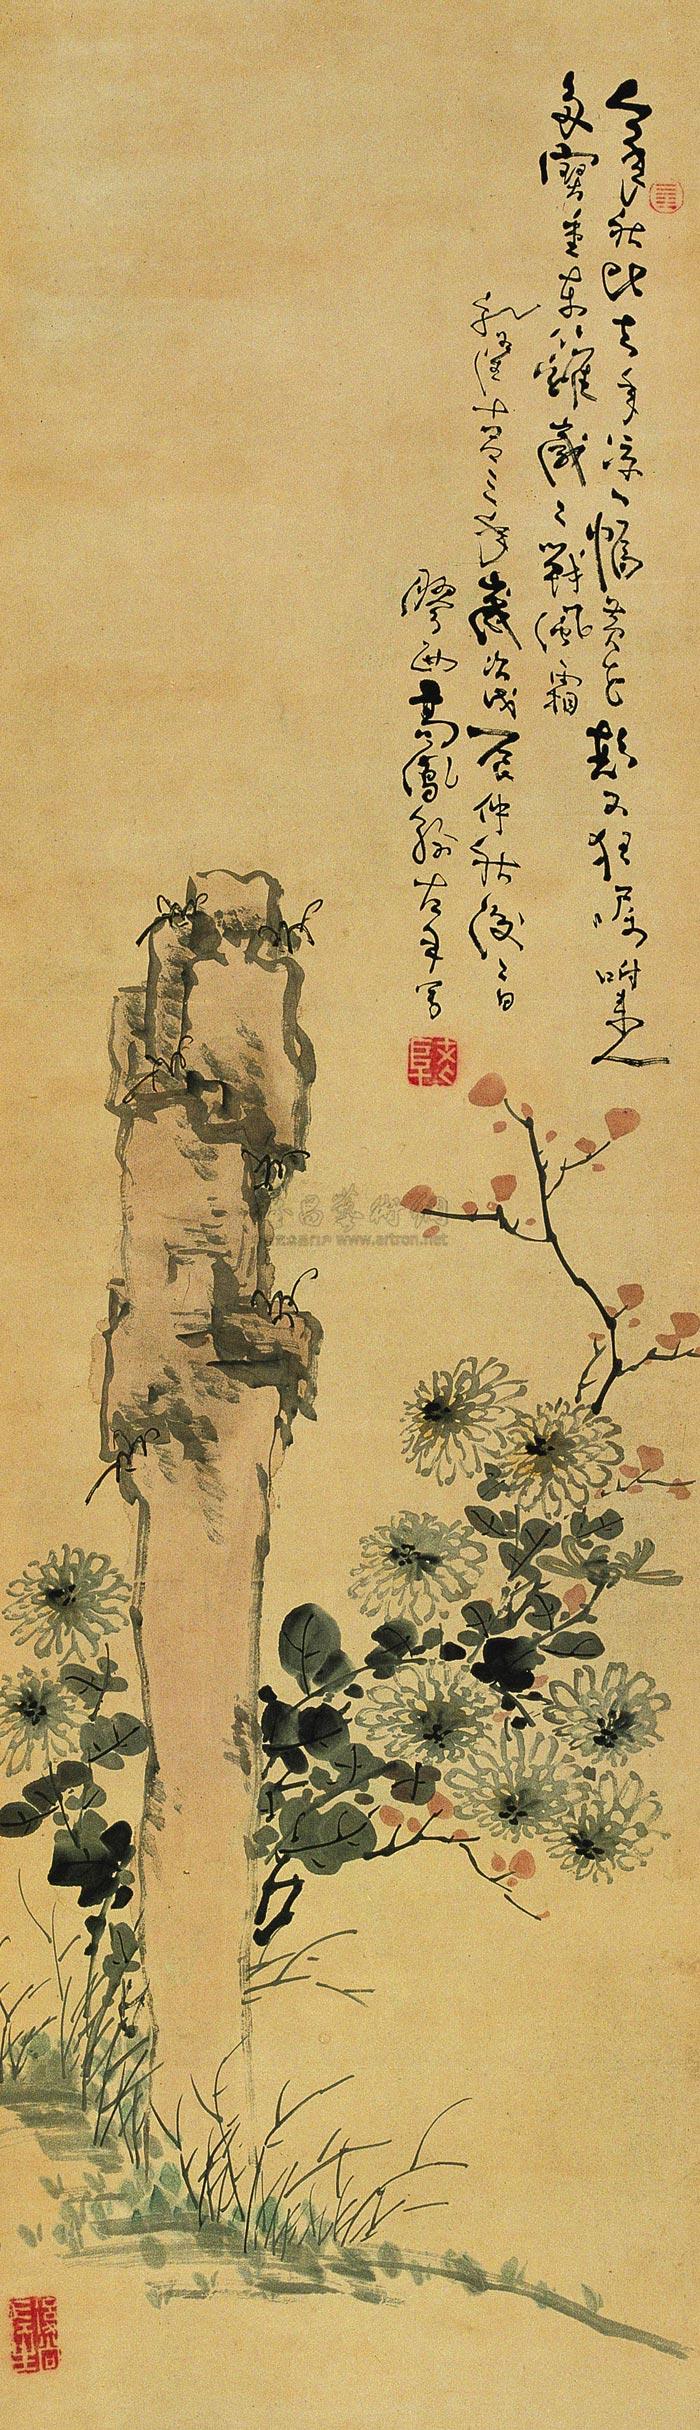 1855 菊石图 立轴 设色纸本